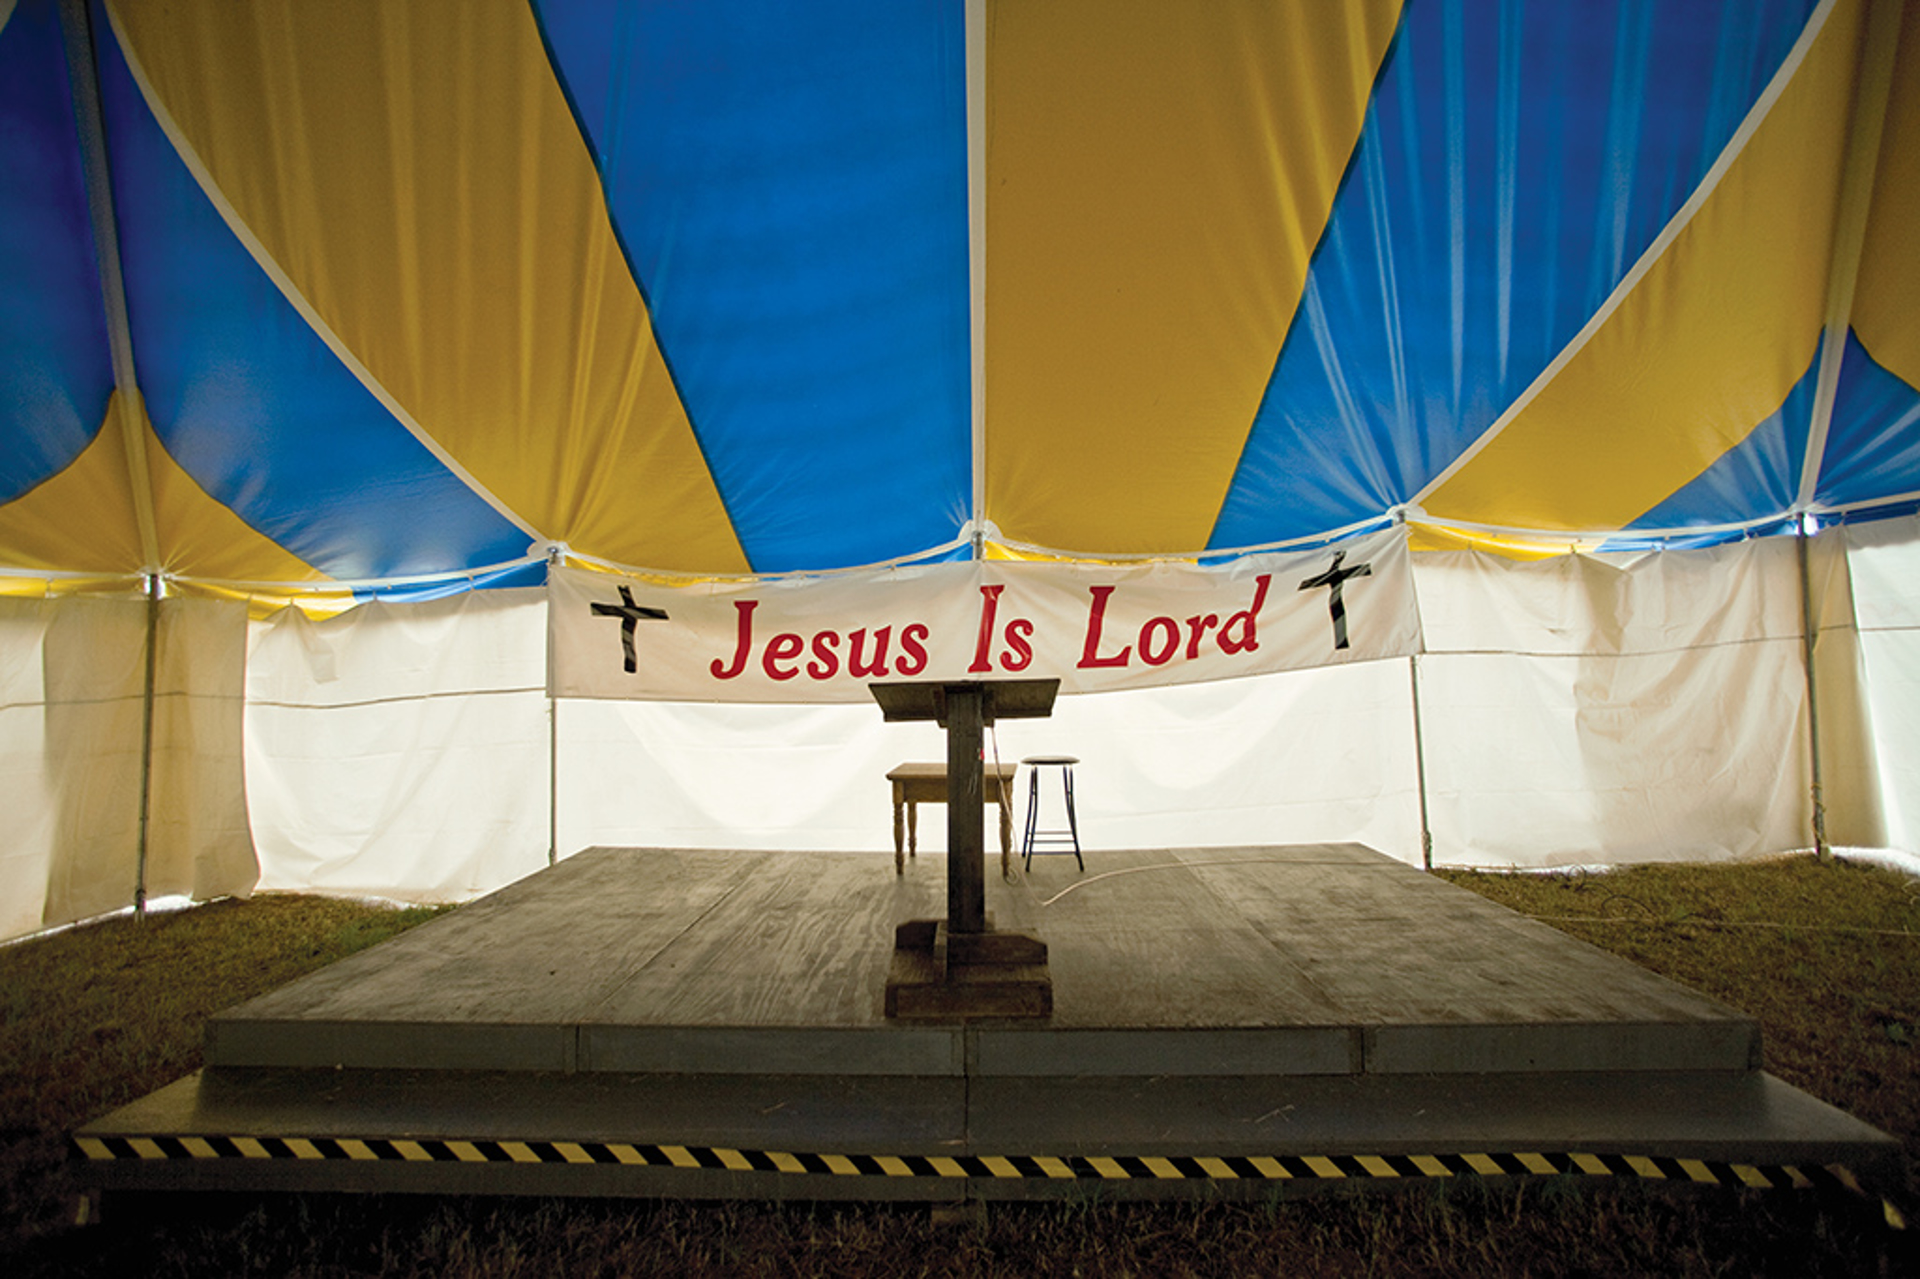 Jesus Is Lord by Jerry Siegel